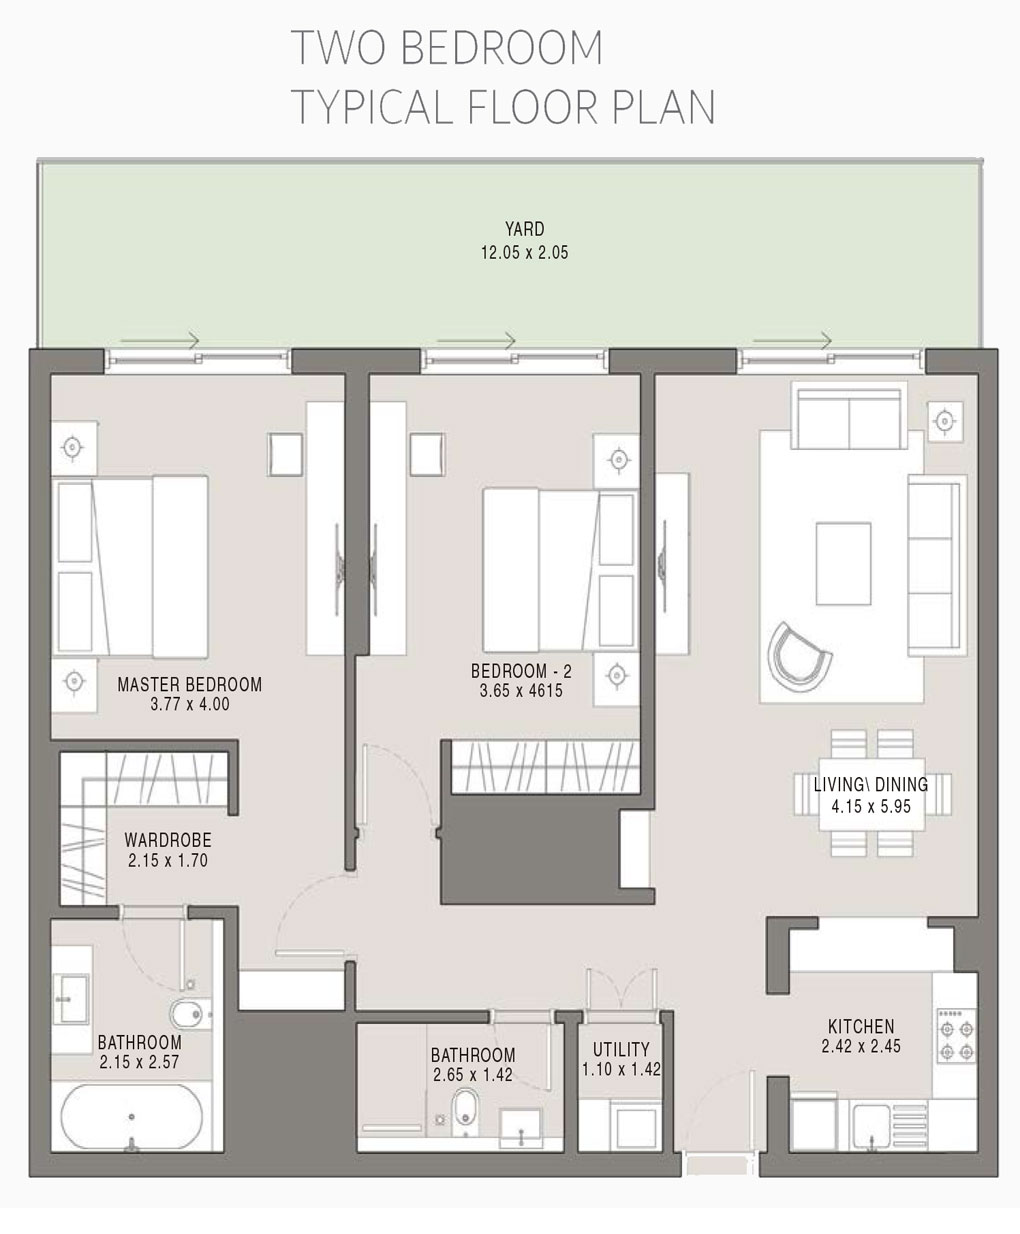 2BDR-Tpical Floor Plan